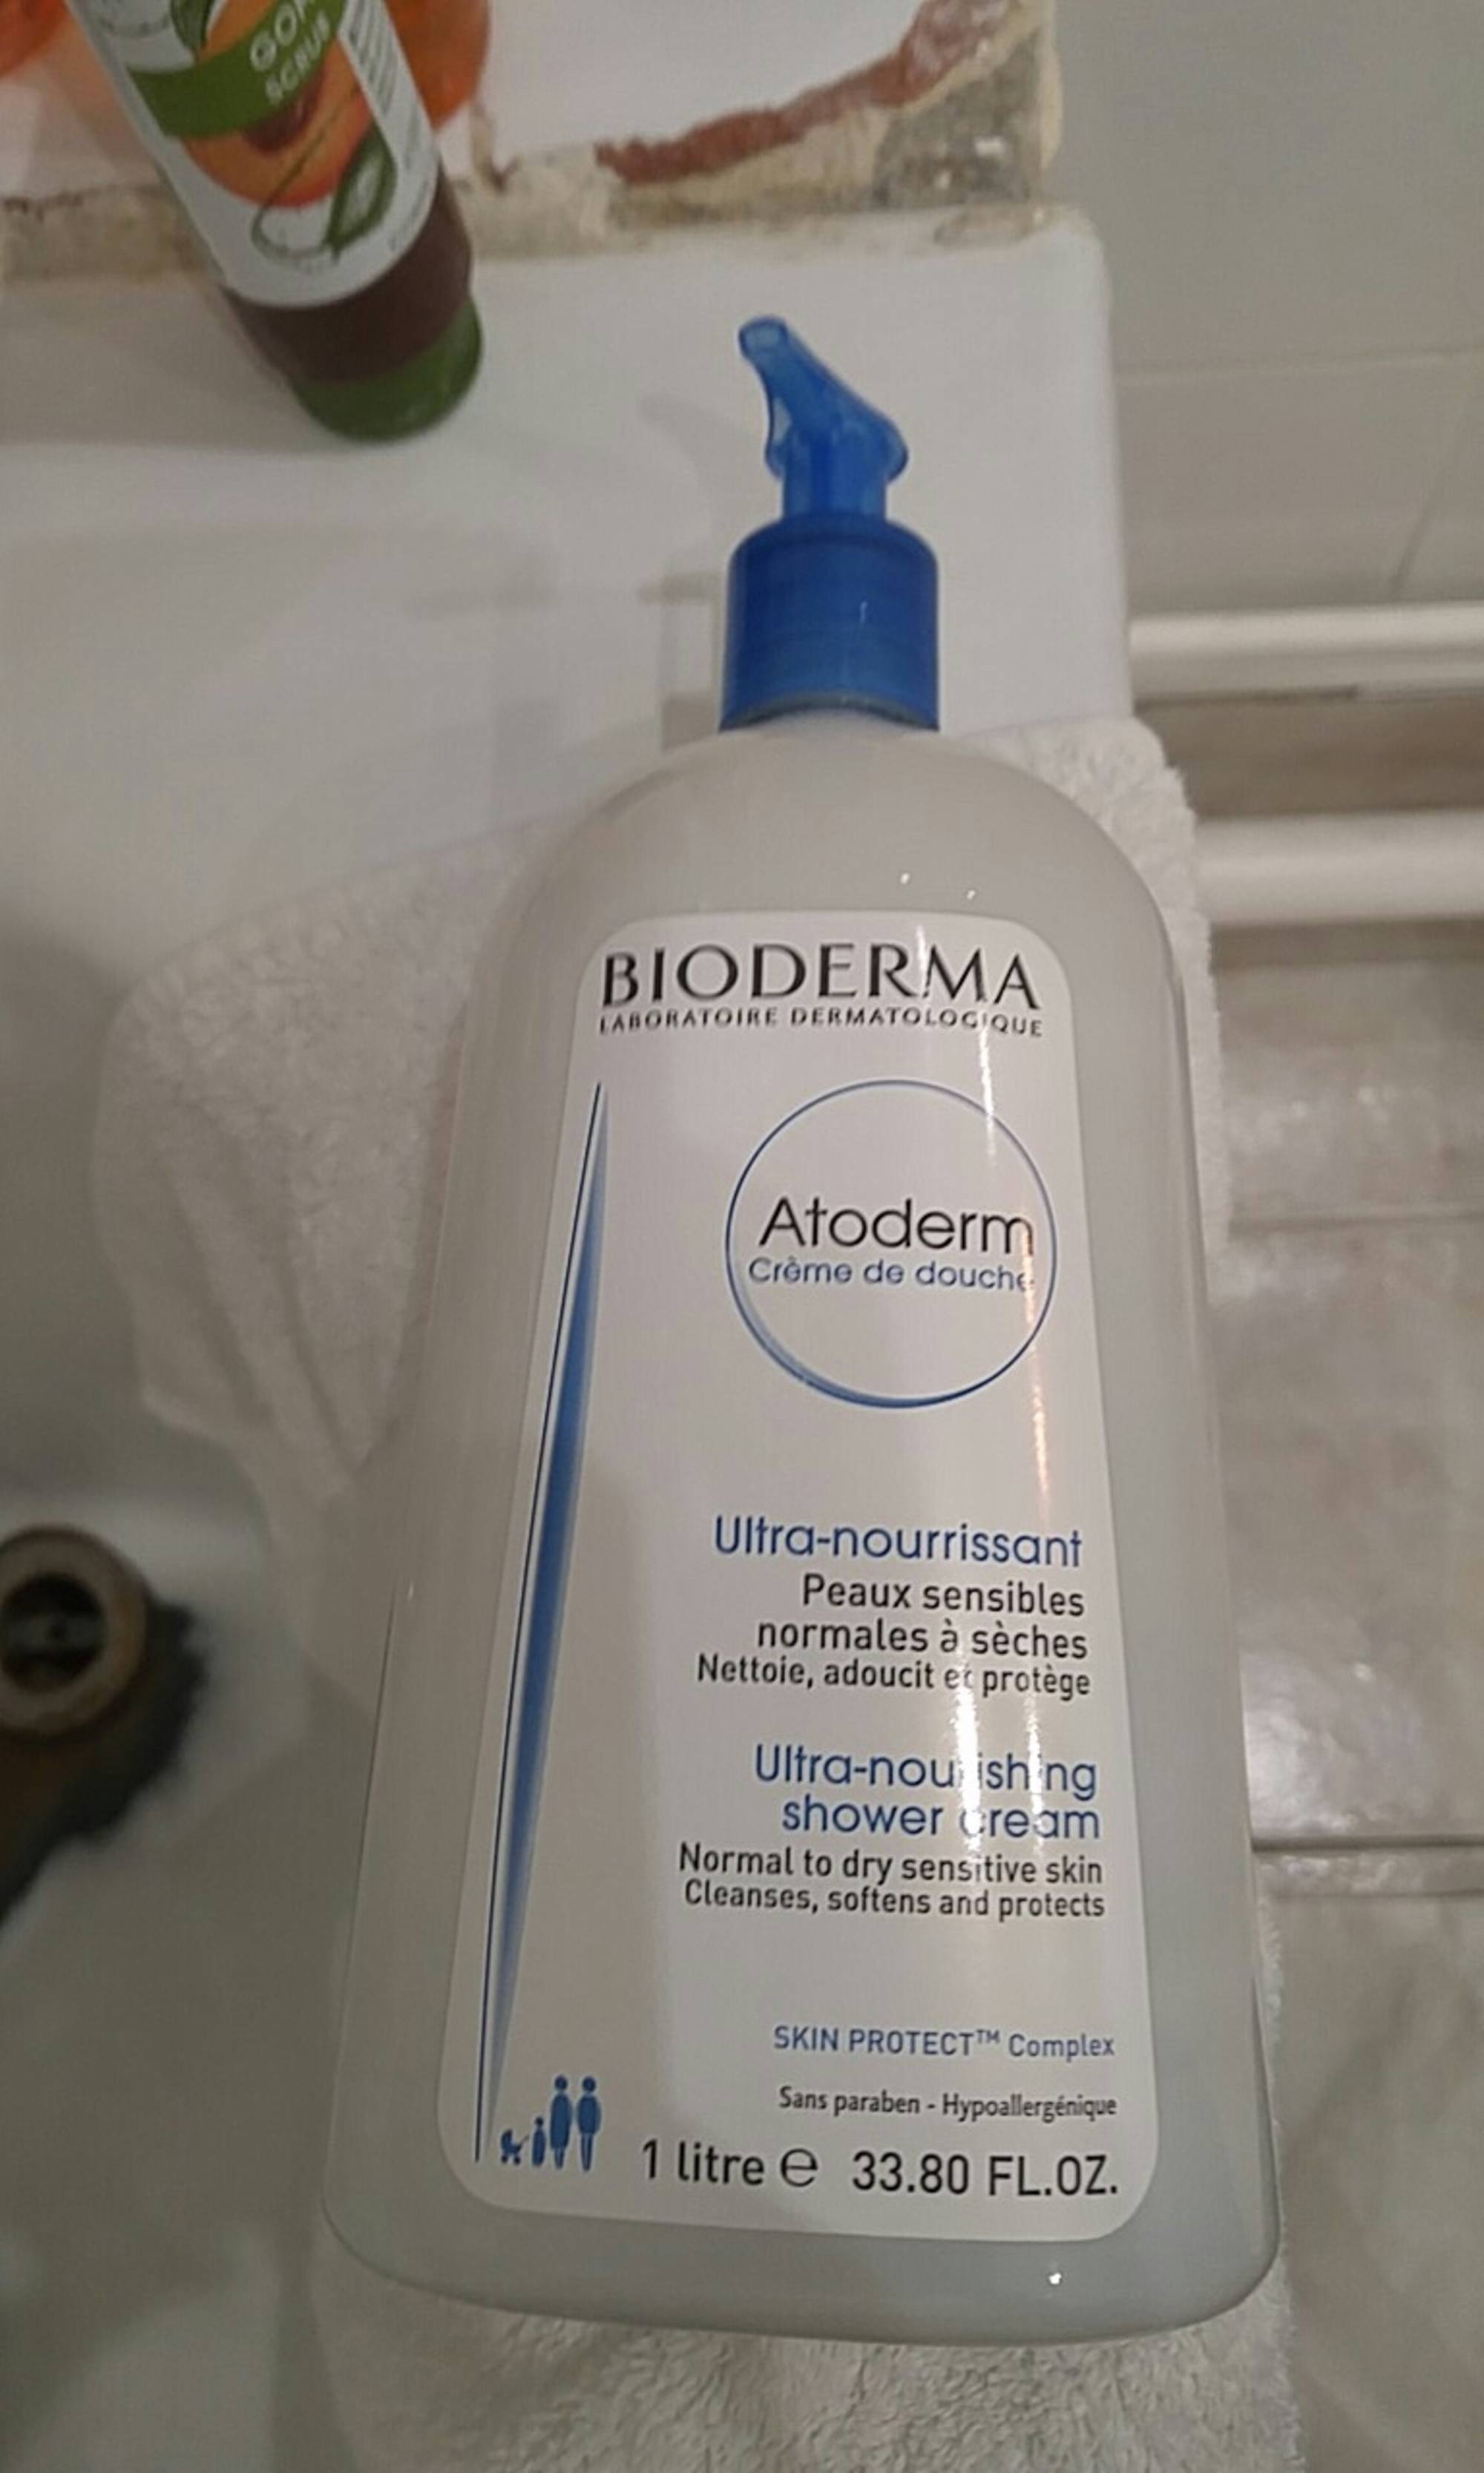 BIODERMA - Atoderm - Crème de douche ultra-nourrissant